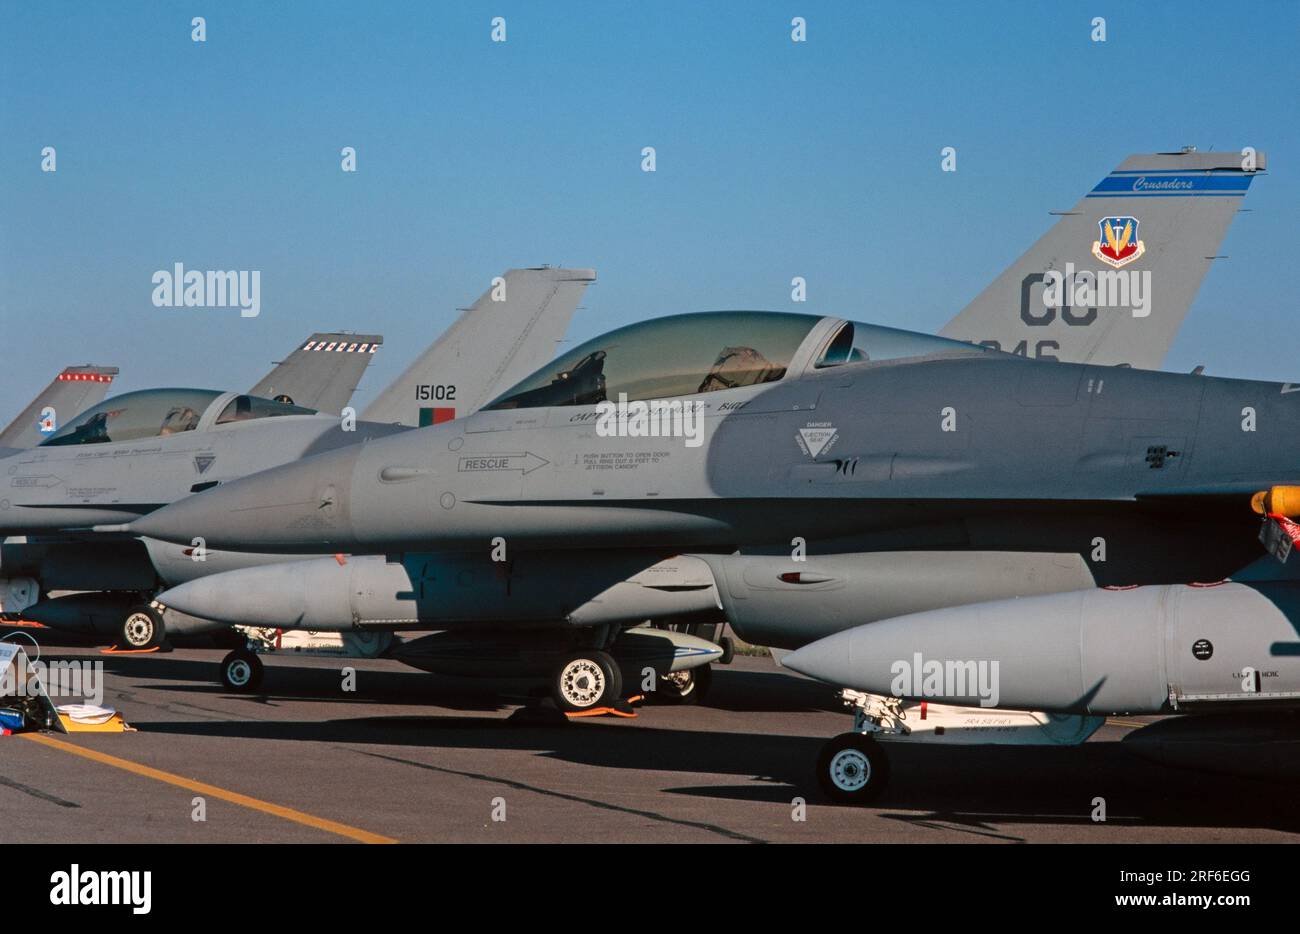 La fusoliera anteriore dei caccia General Dynamics F-16. Il Front Aircraft è United States Air Force 86-0342. Foto scattata il 14 luglio 1997 a Fairford in Inghilterra. Foto Stock